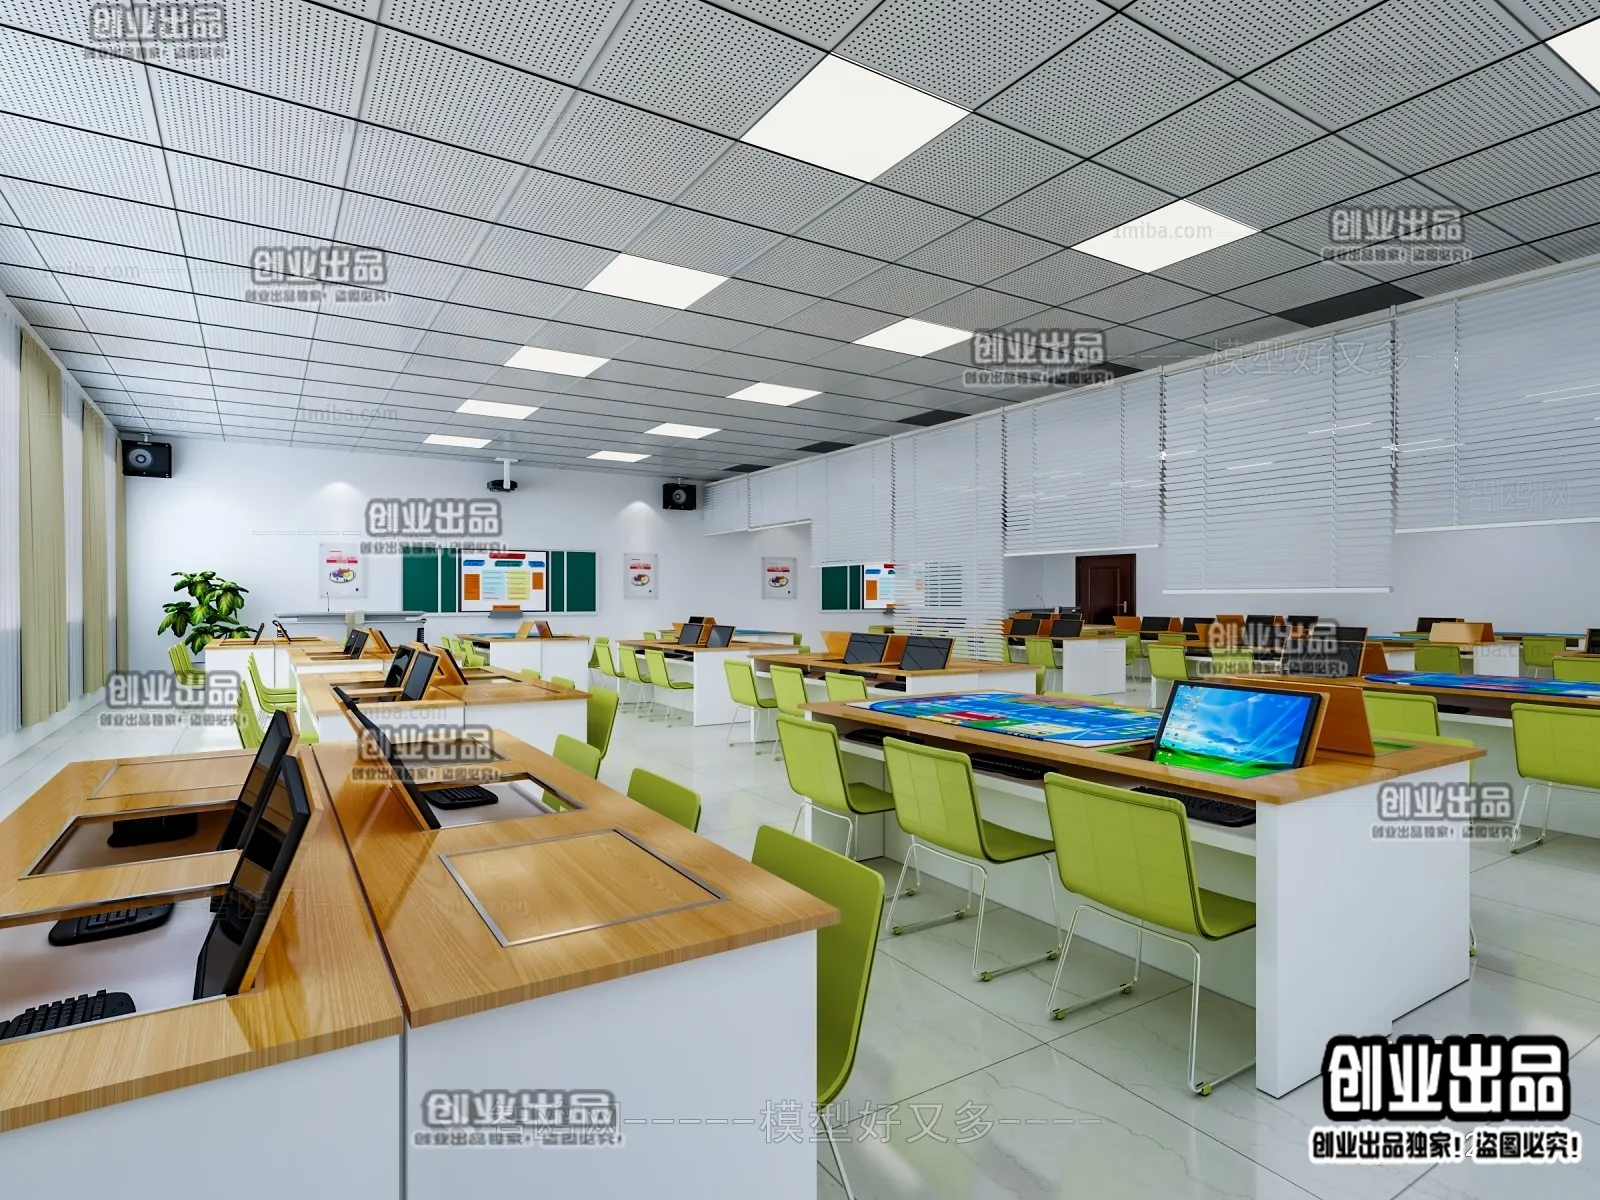 3D SCHOOL INTERIOR (VRAY) – CLASSROOM 3D SCENES – 027